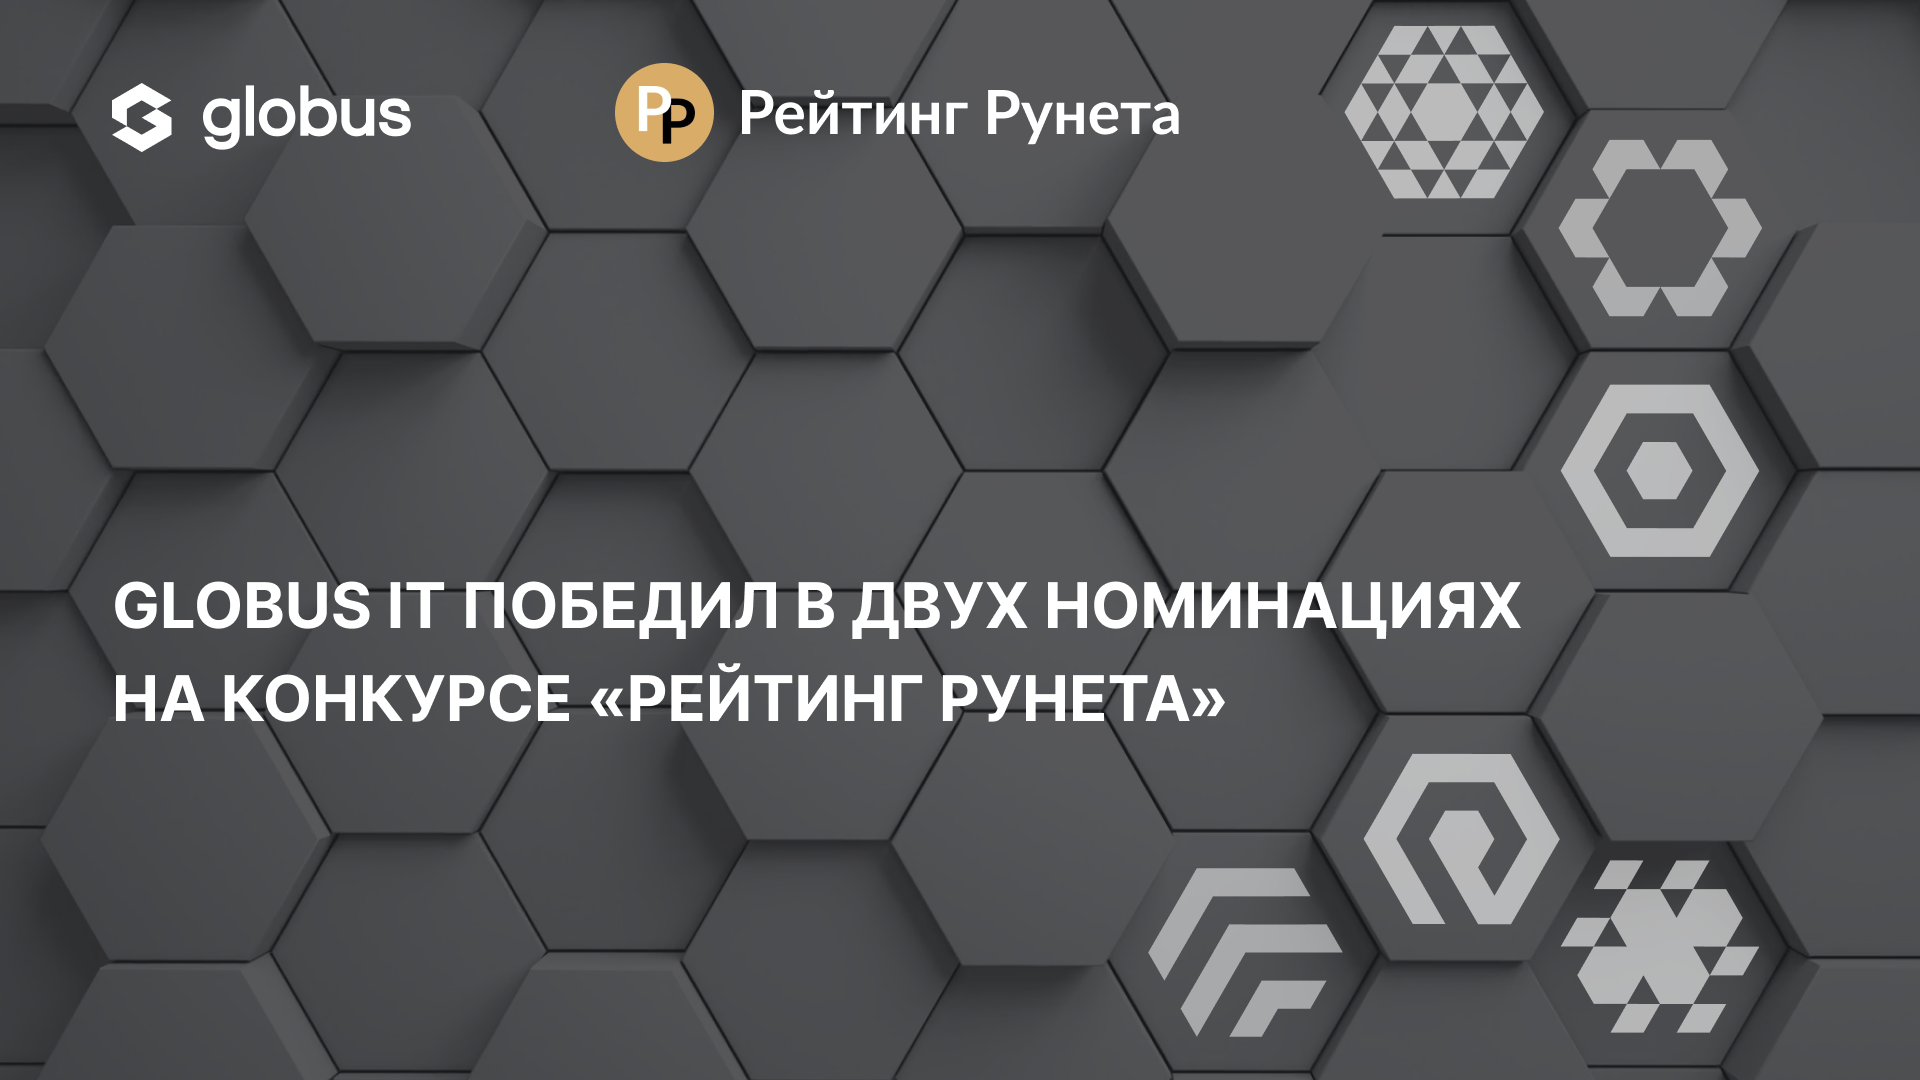 Проекты Globus IT победили в двух номинациях конкурса «Рейтинг Рунета»